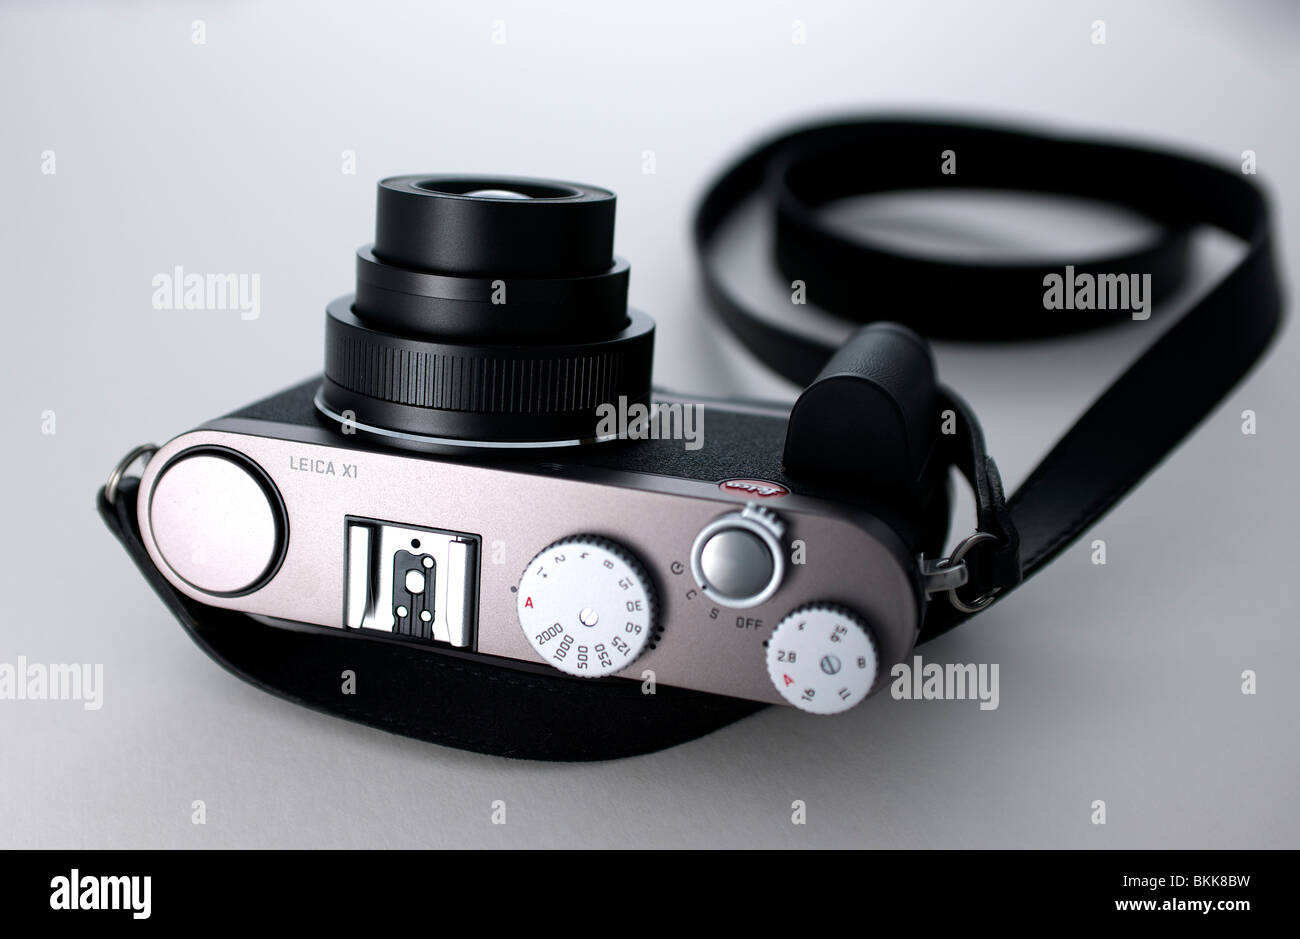 Leica X1 Stock Photo